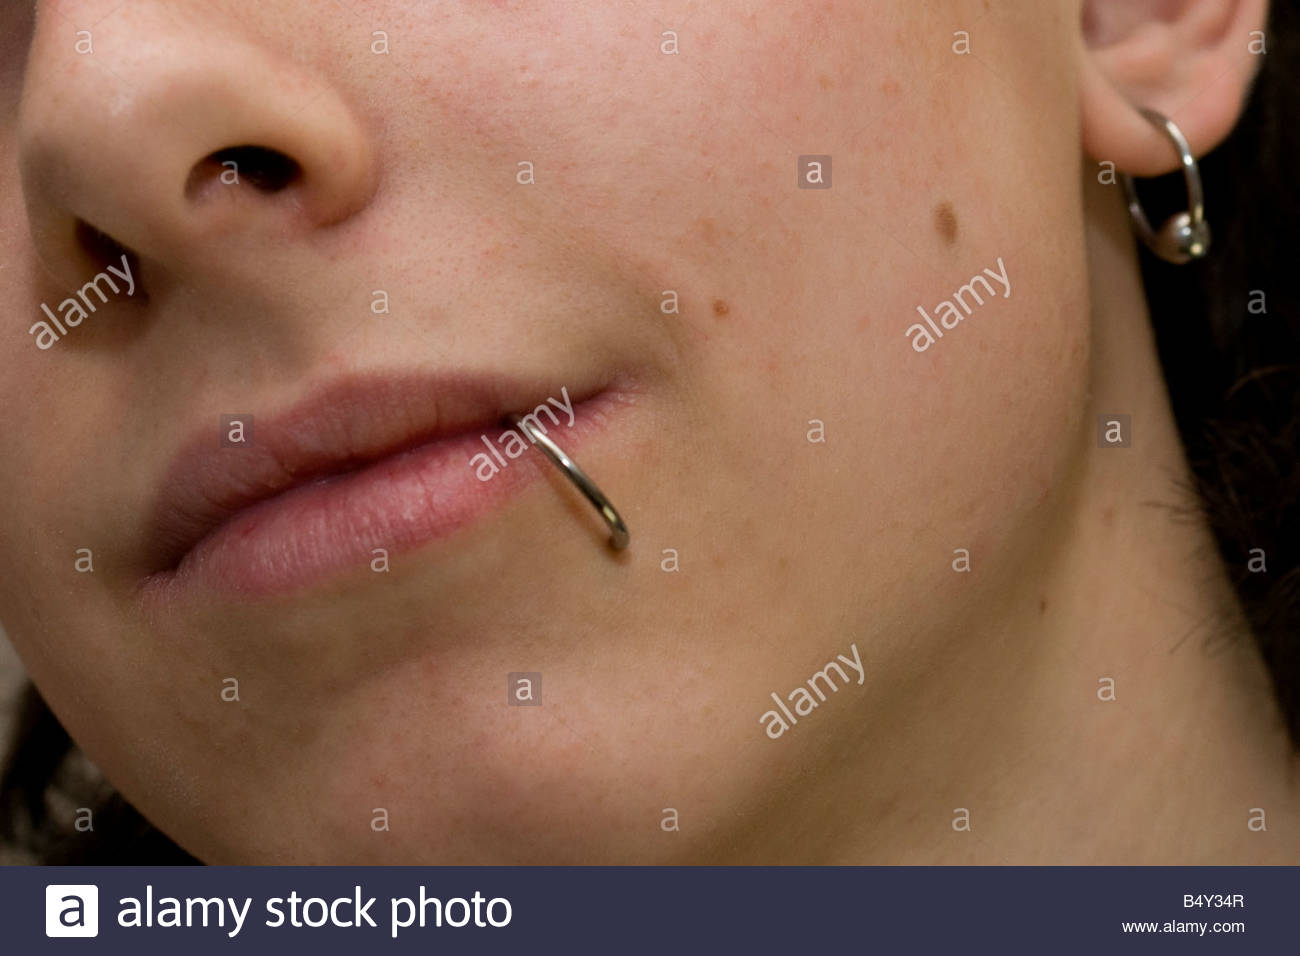 Über der lippe piercing Piercing auf